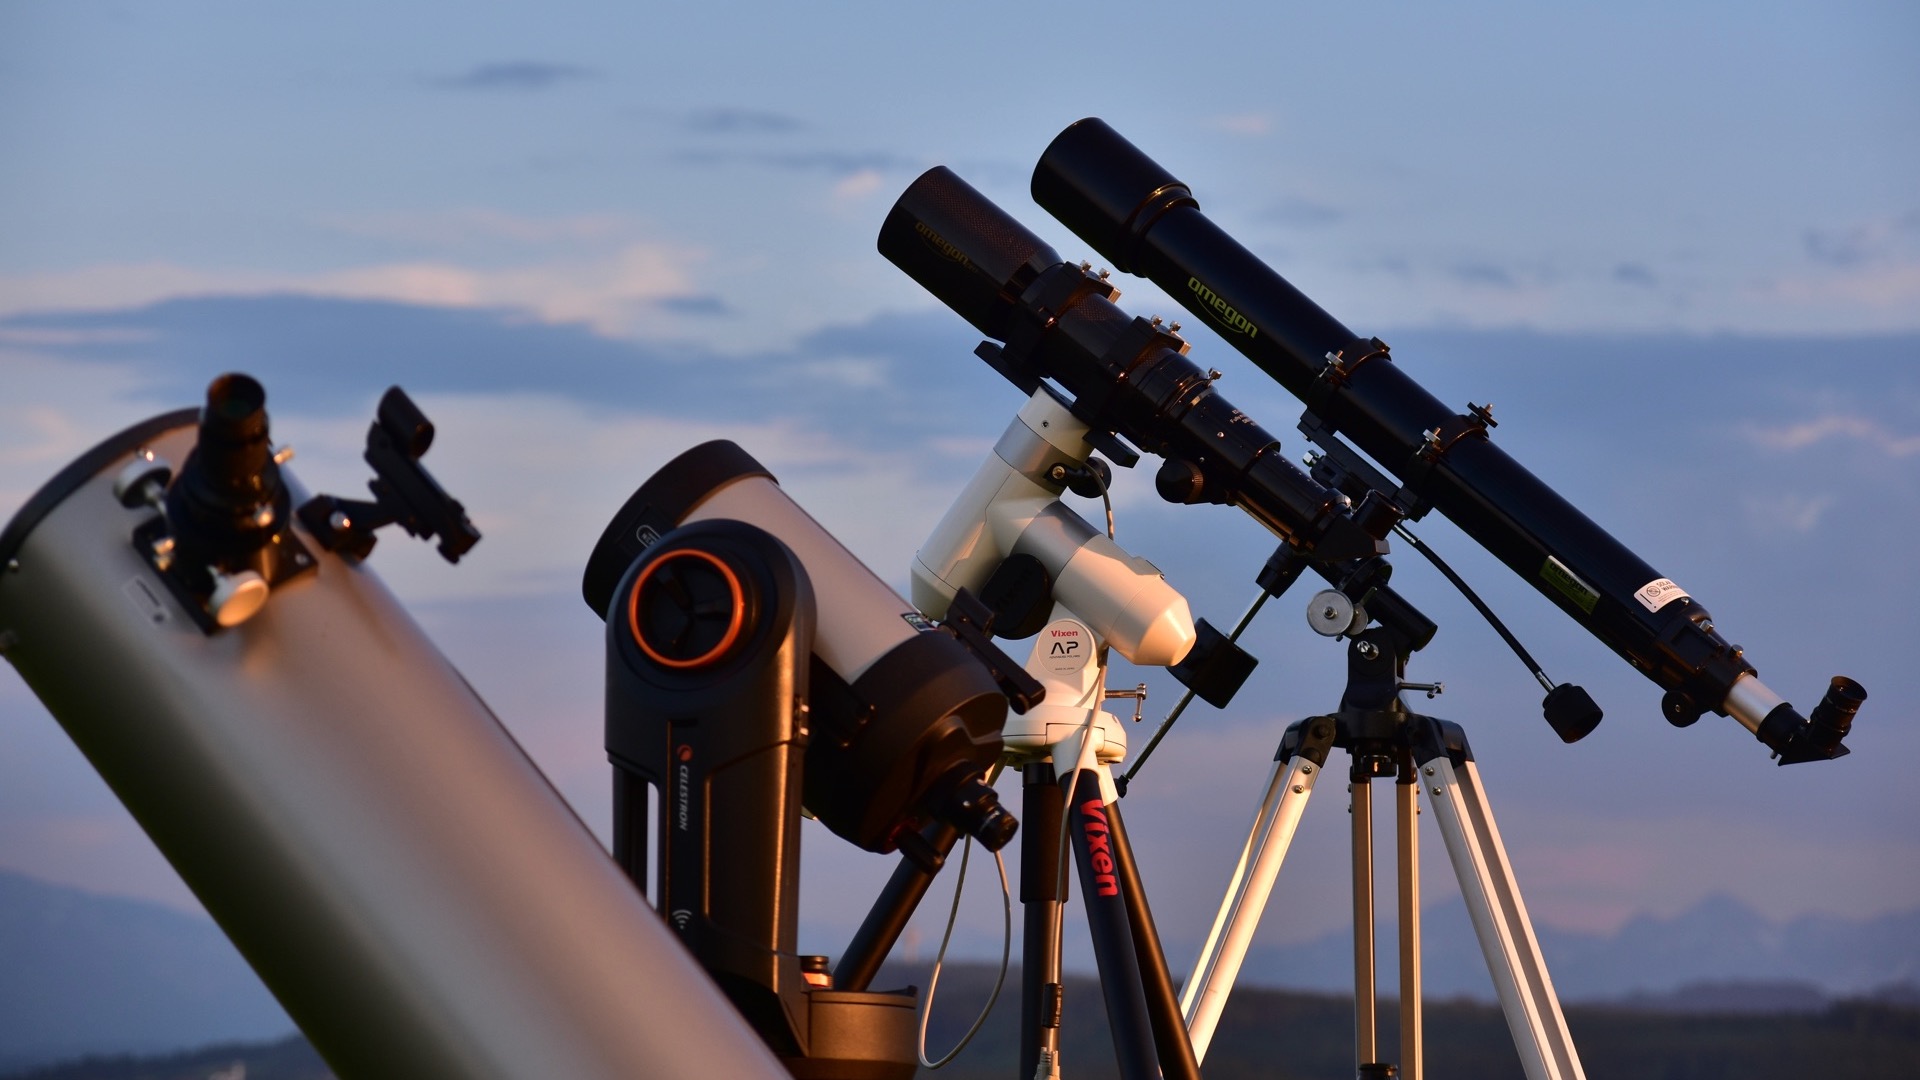 Chi inizia l’hobby dell’astronomia si trova davanti a un disorientante assortimento di telescopi. Ma i nostri esperti chiariranno velocemente ogni tuo dubbio.